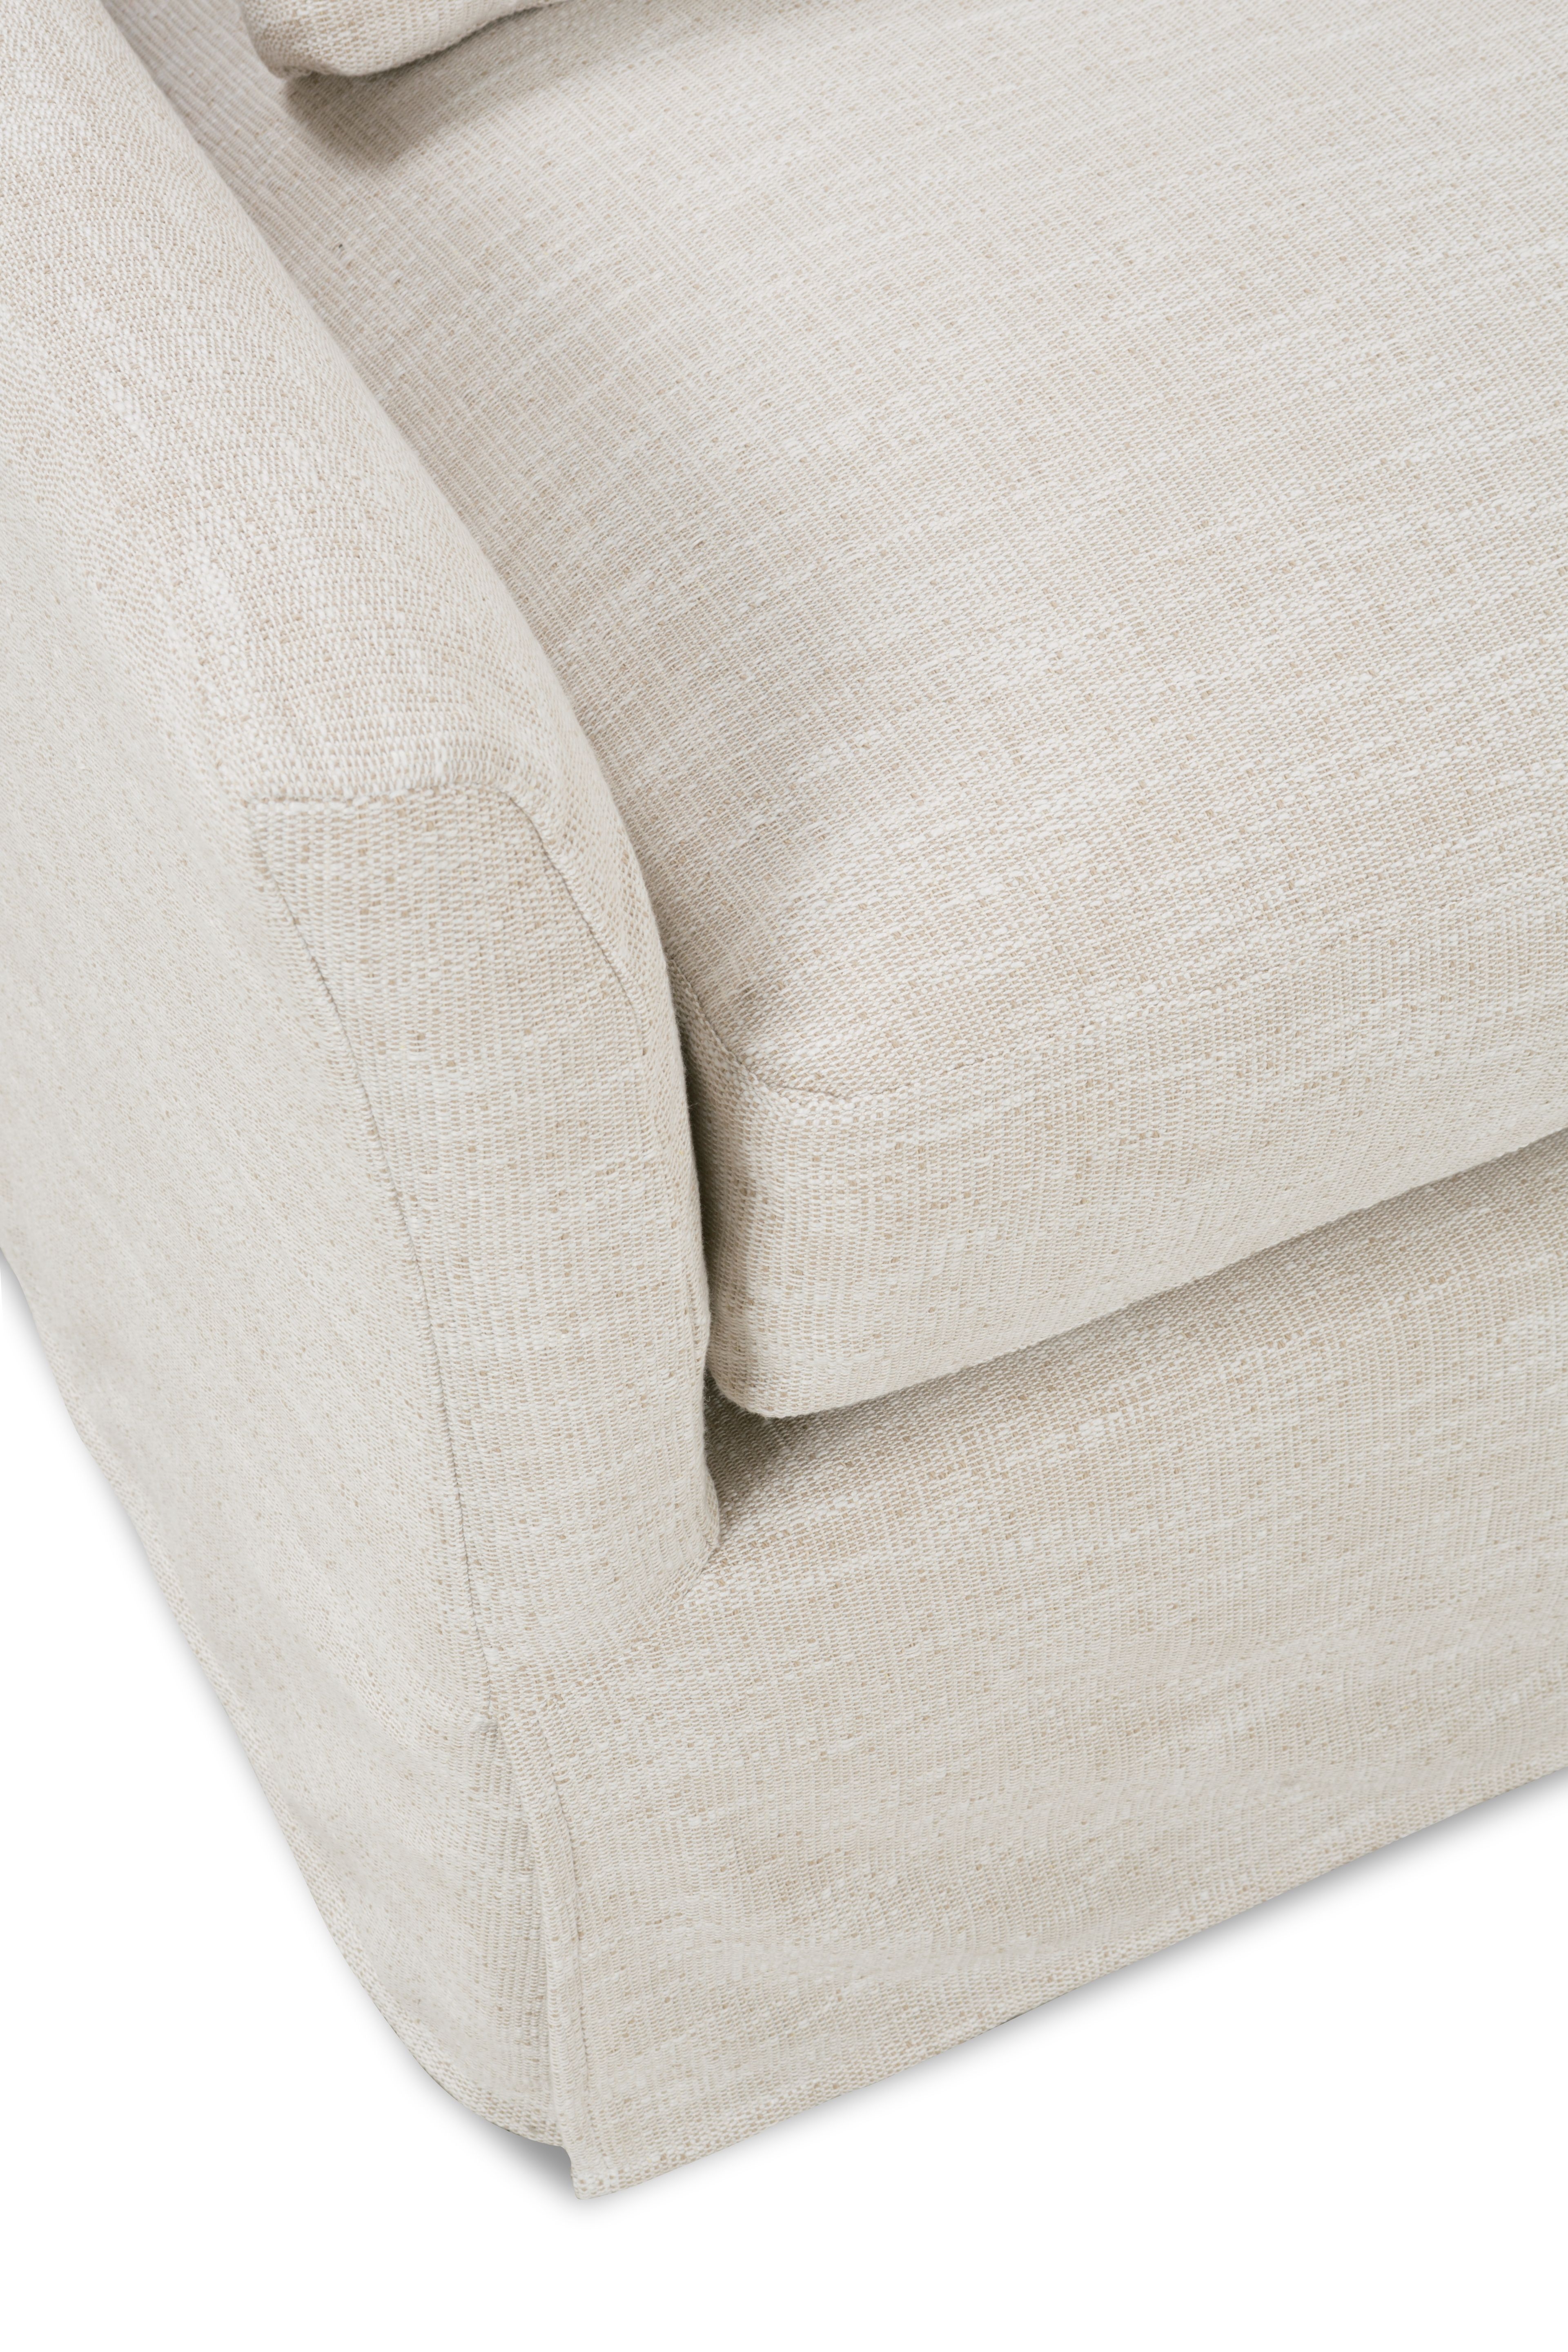 Fraser Slipcover Sofa, Bench Cushion, White, 95" - Image 5